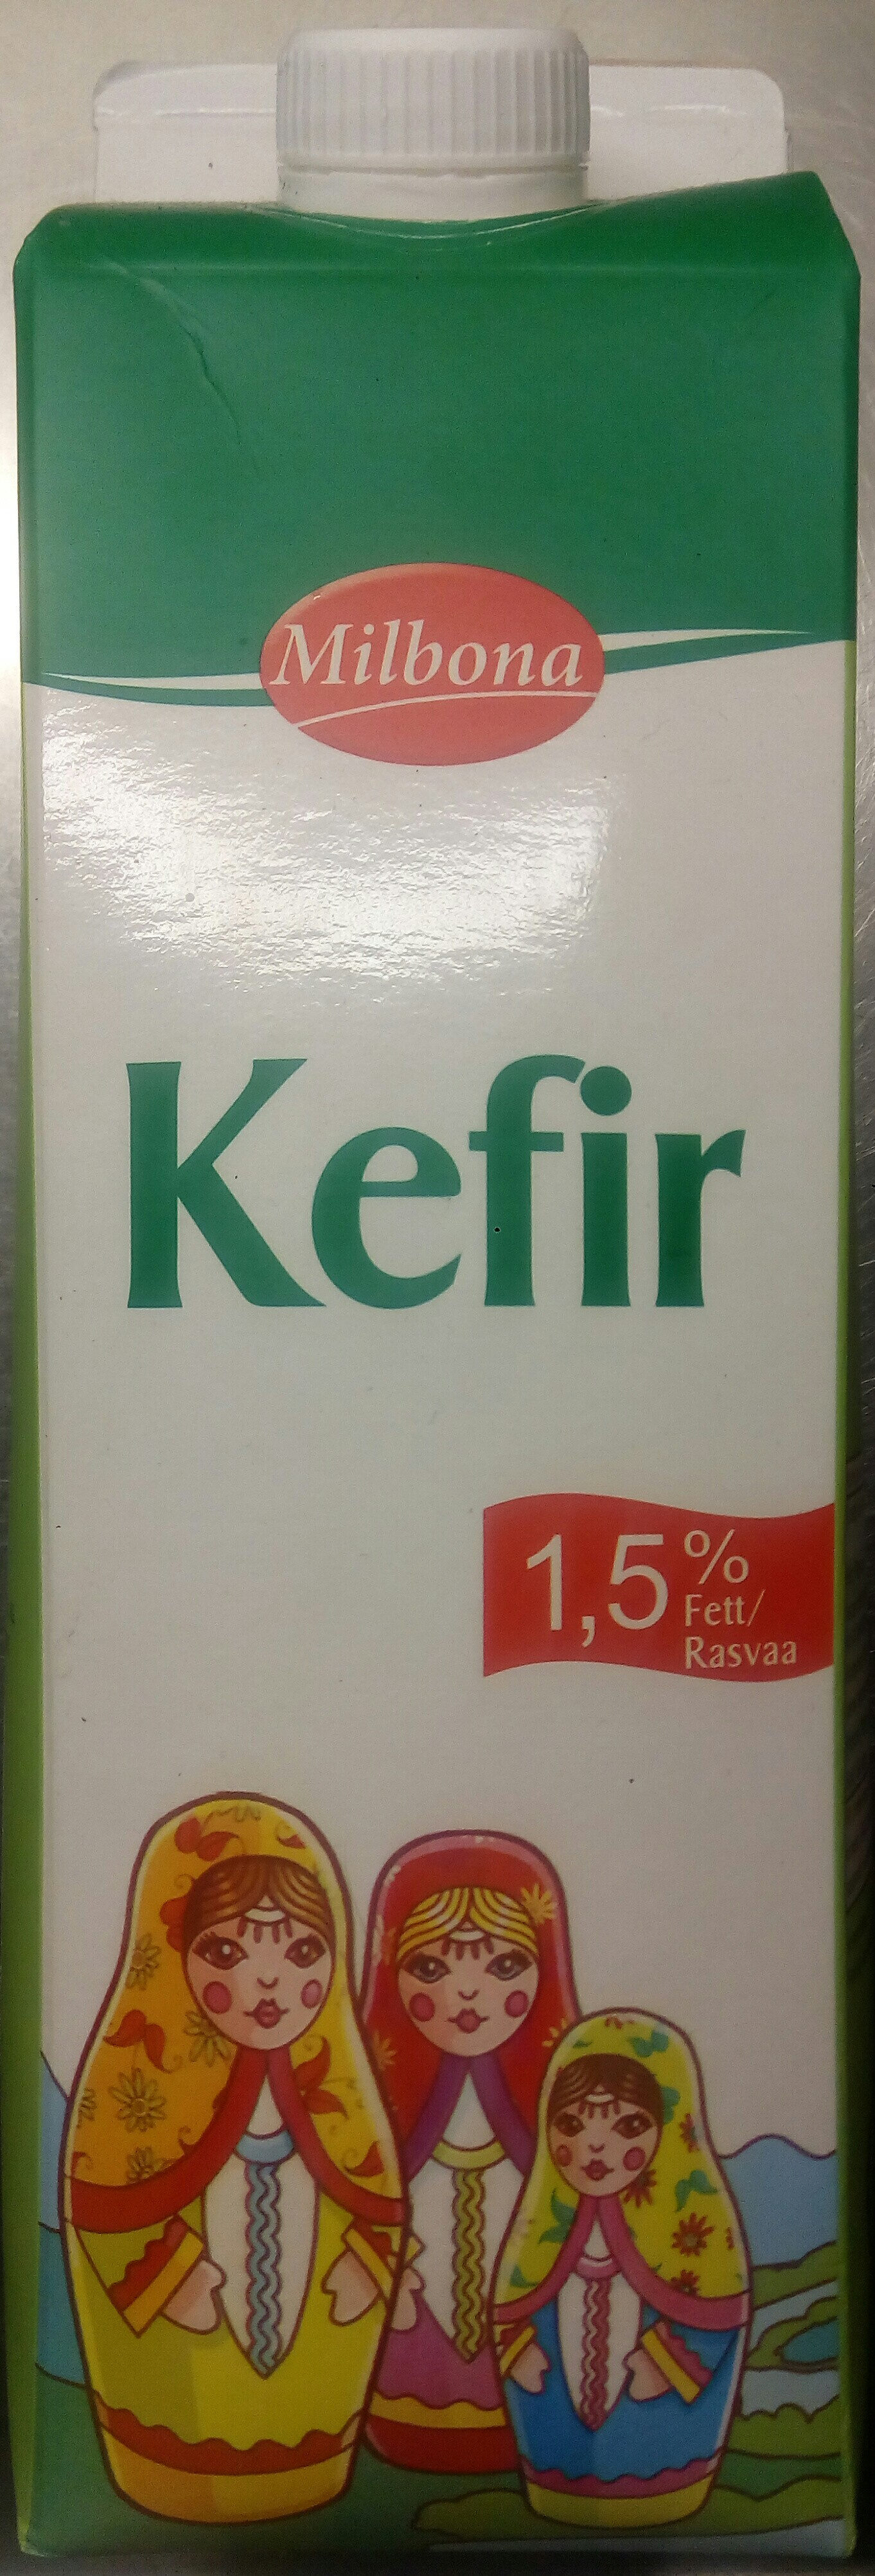 Milbona Kefir - Produkt - sv